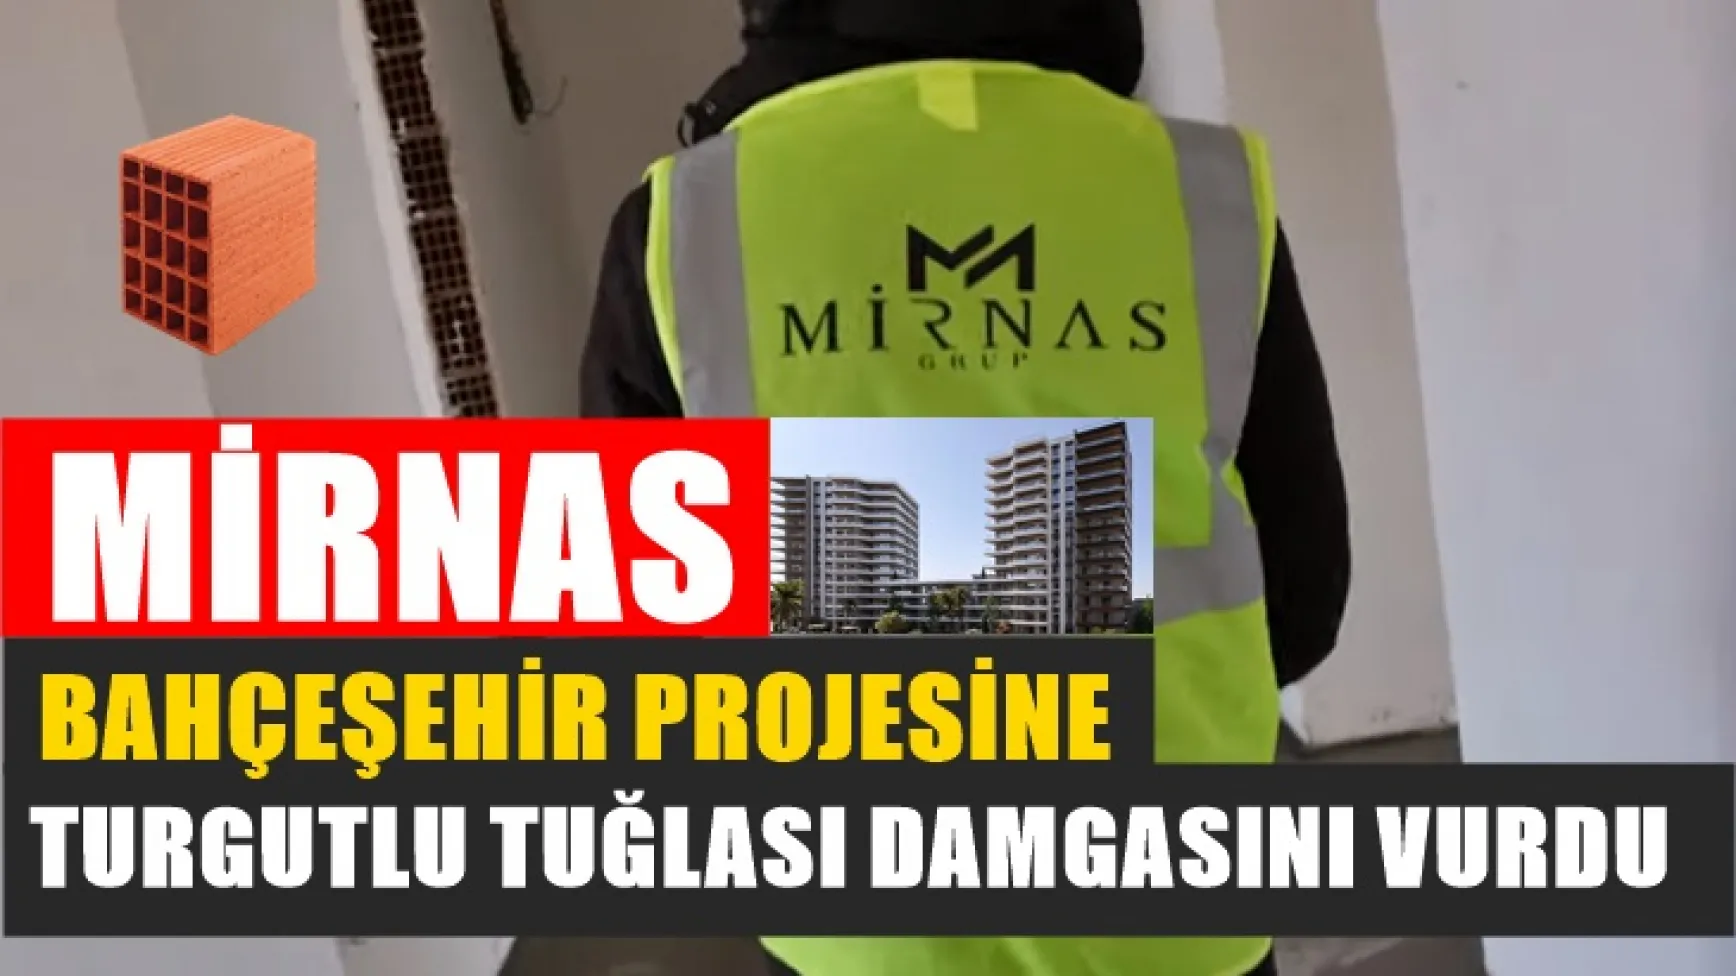 Mirnas Bahçeşehir Projesine Turgutlu Tuğlası Damgasını Vurdu